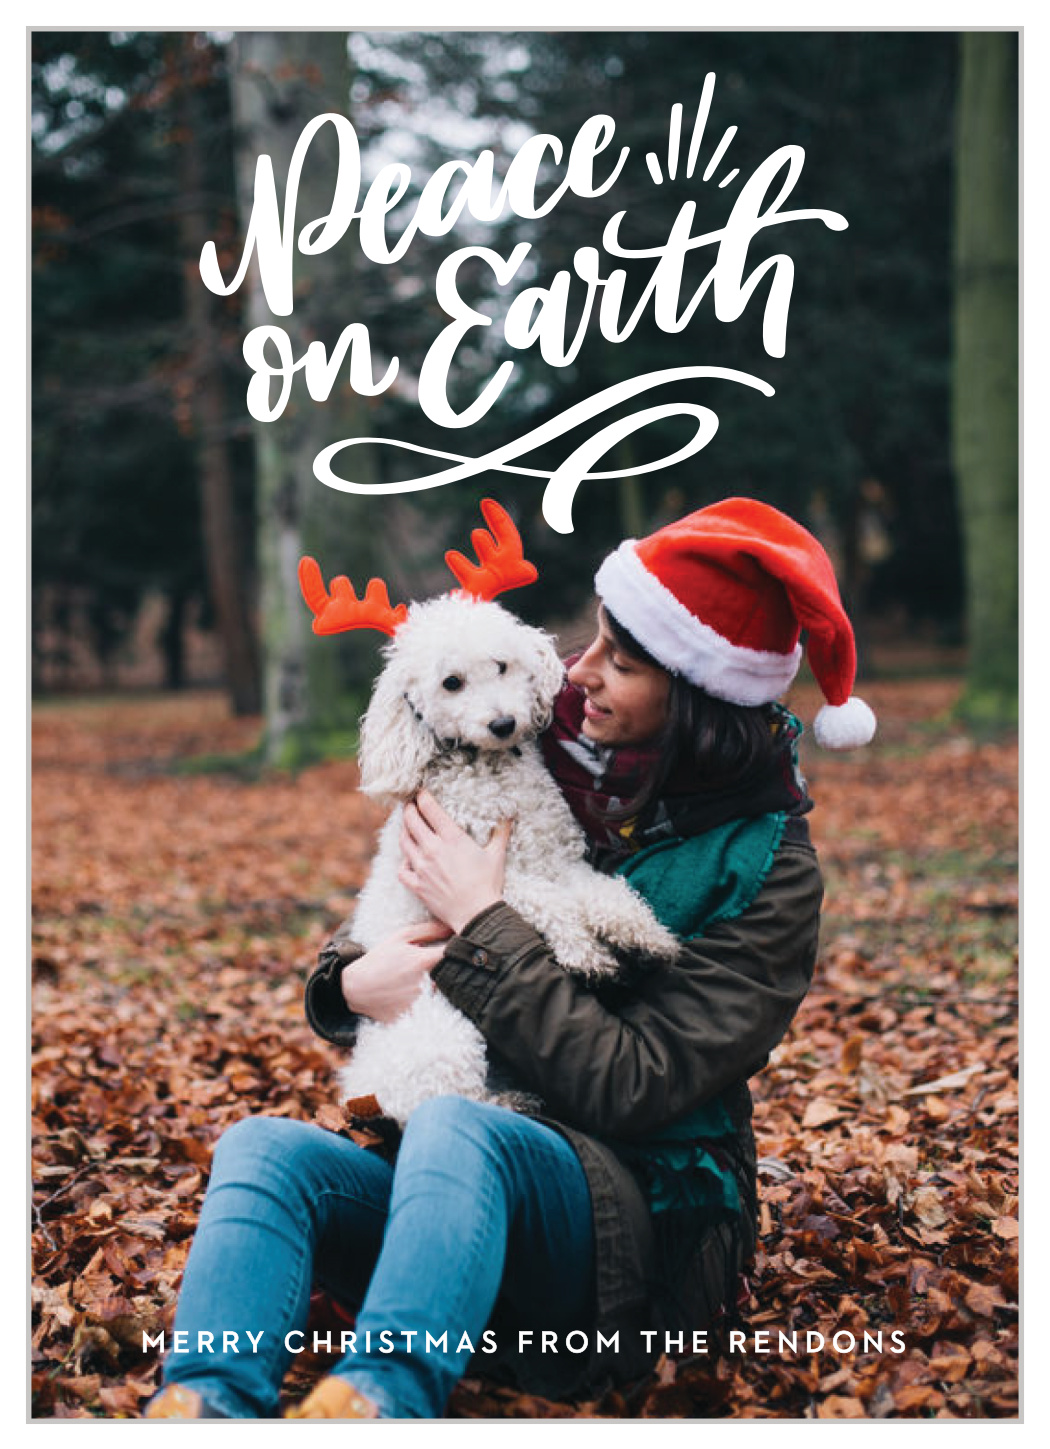 family christmas card ideas with dog